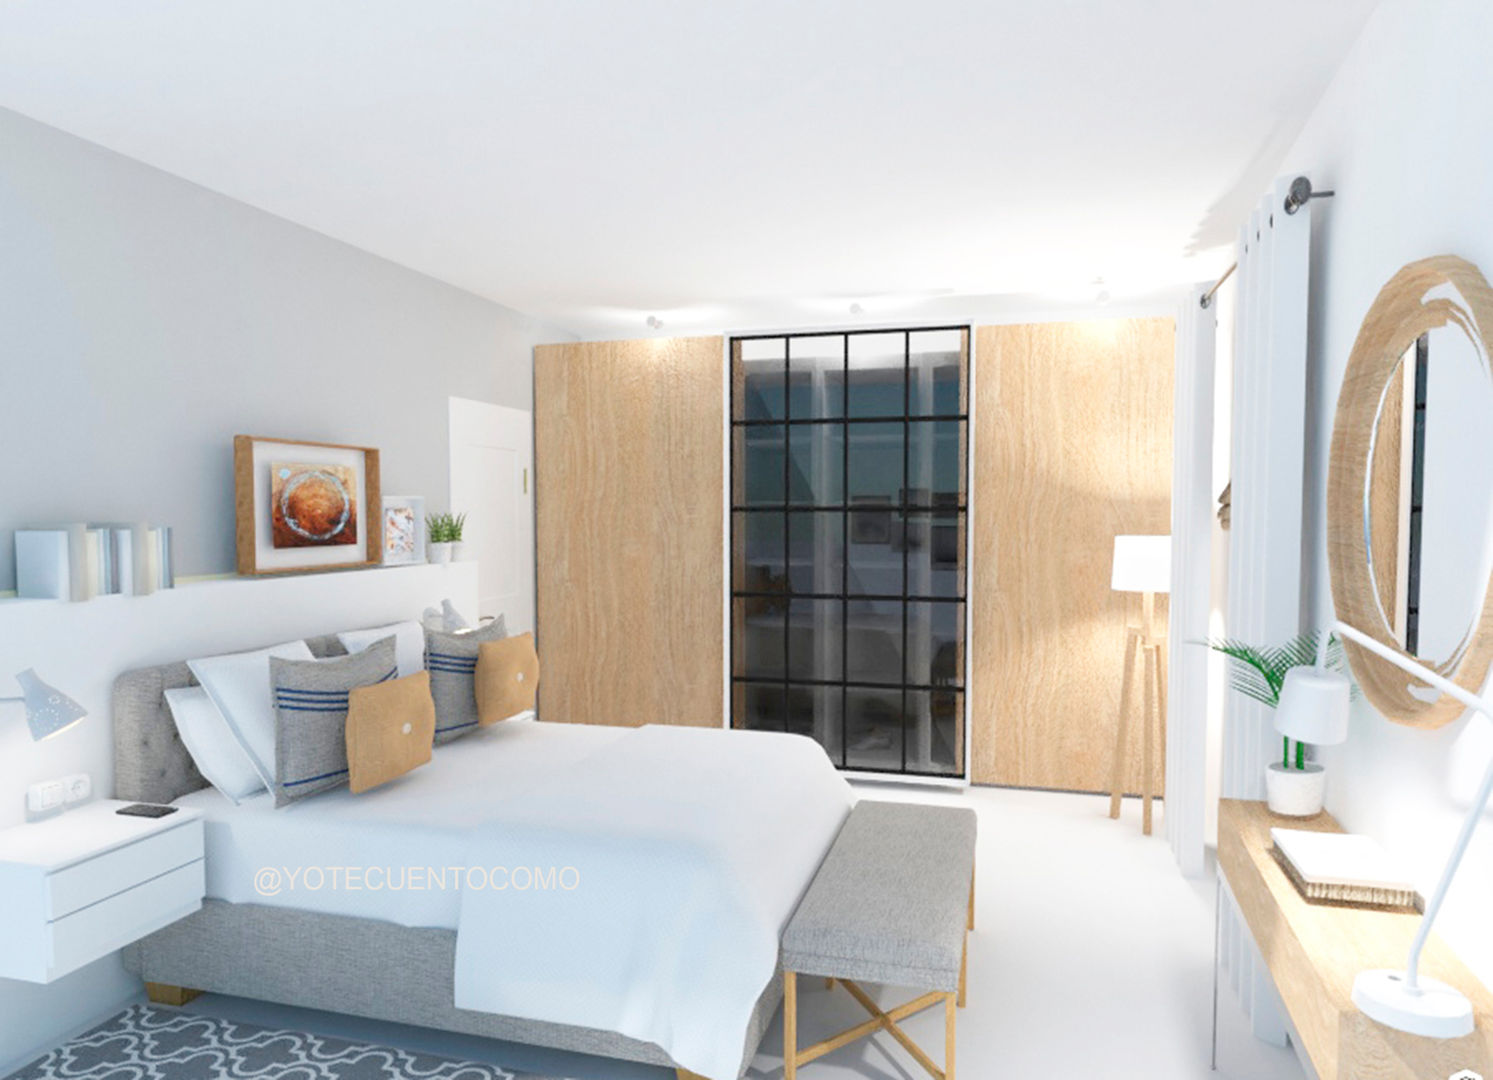 Dormitorio - Proyecto interiorismo ONLINE, YO TE CUENTO COMO YO TE CUENTO COMO 스칸디나비아 침실